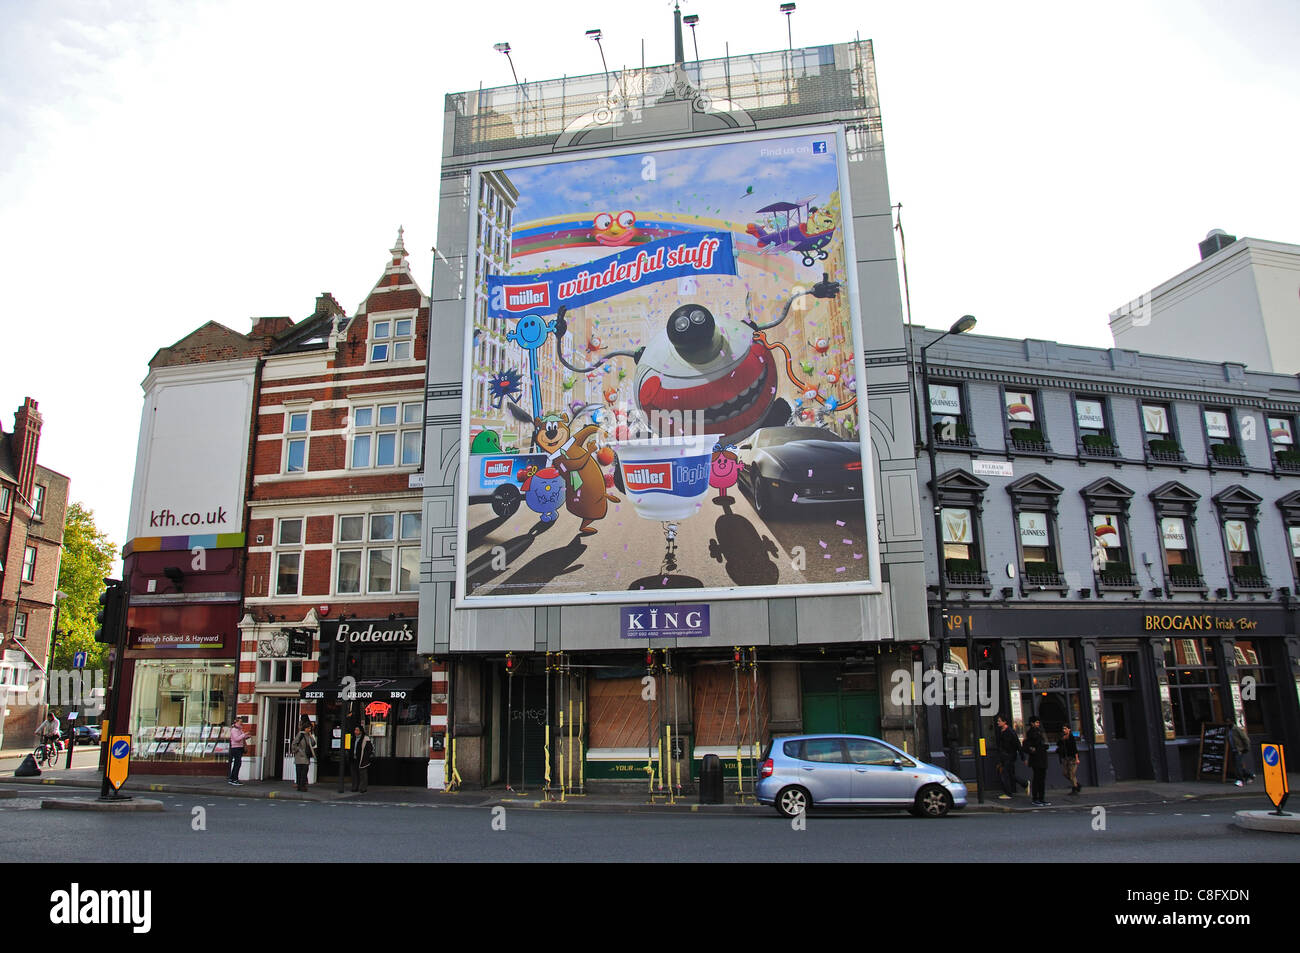 Panneau d'affichage géant, Fulham Broadway, Fulham, London Borough of Hammersmith et Fulham, Londres, Angleterre, Royaume-Uni Banque D'Images